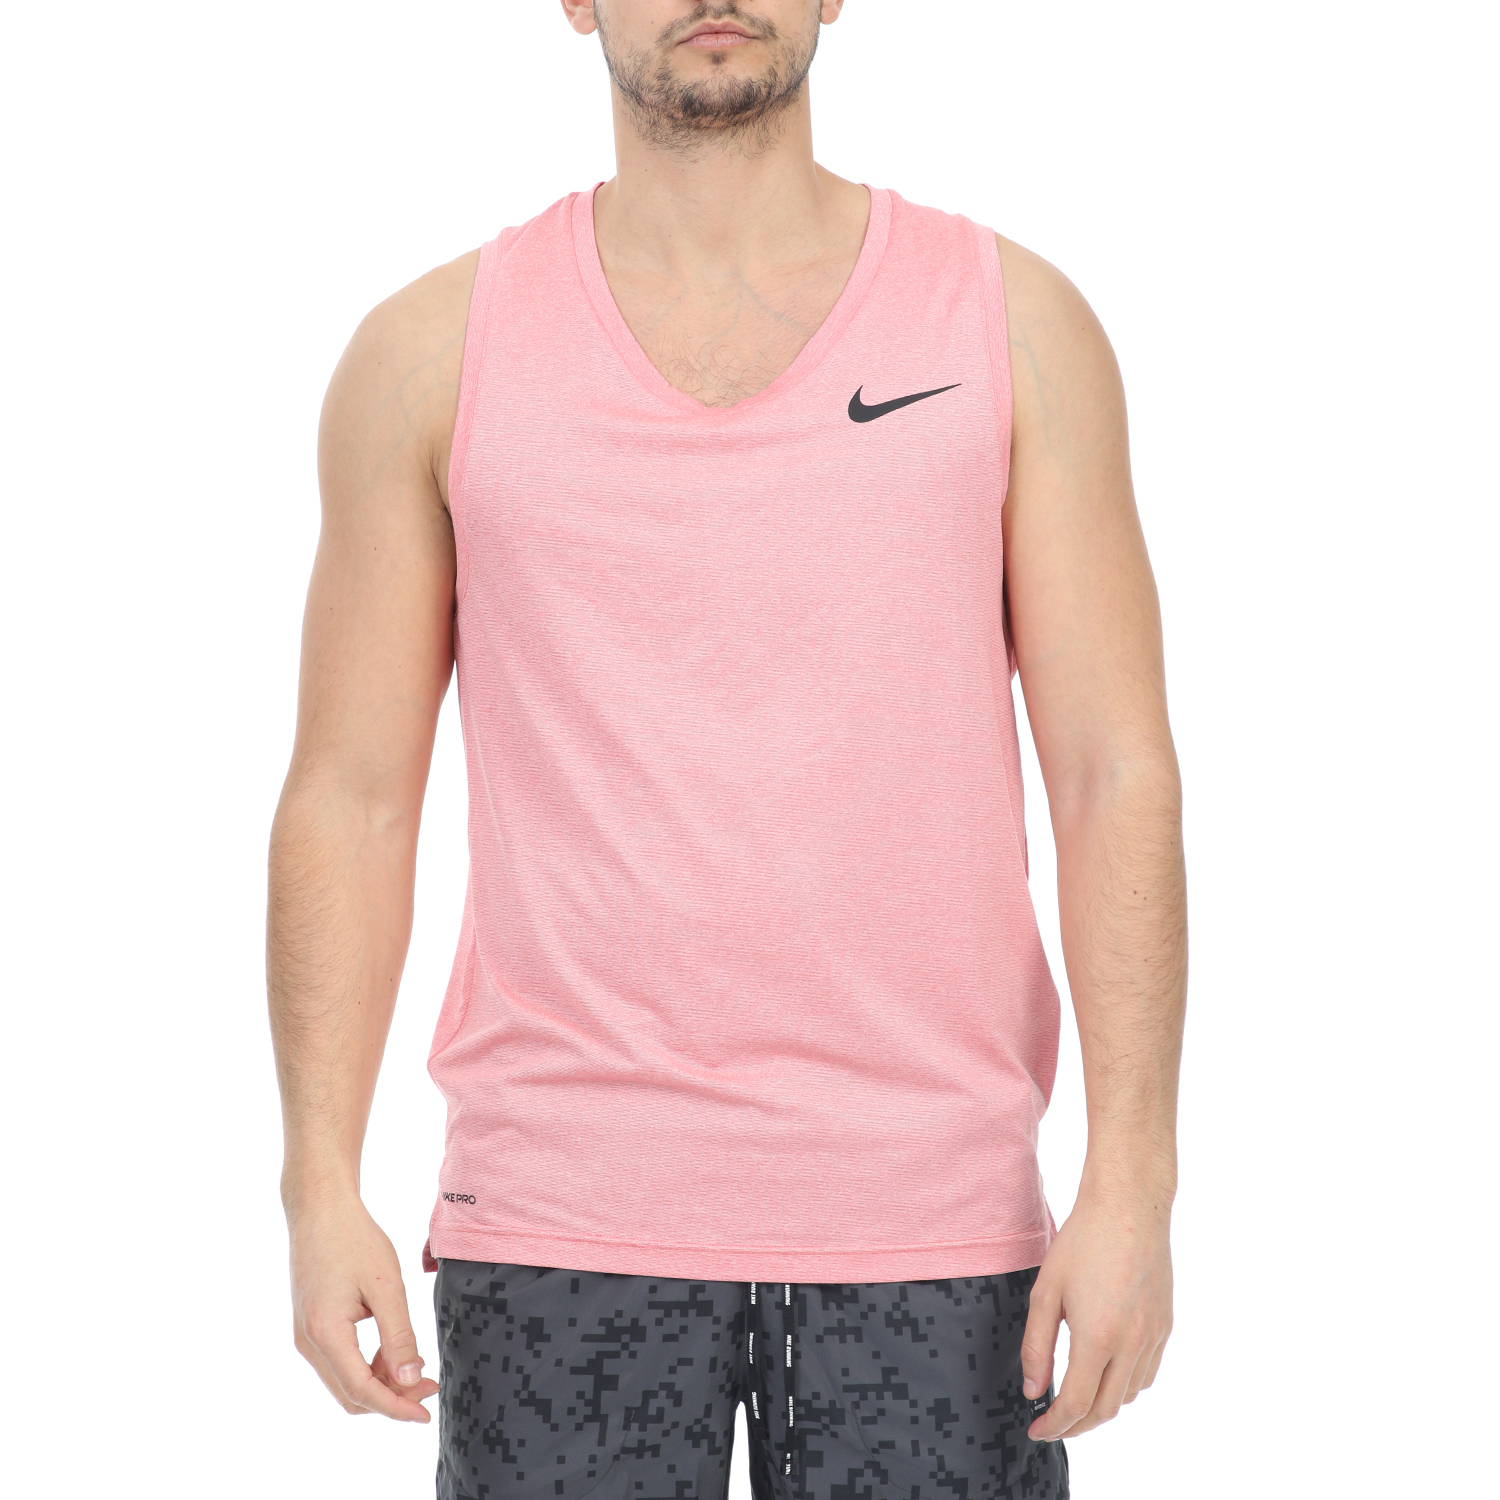 Ανδρικά/Ρούχα/Αθλητικά/T-shirt NIKE - Ανδρική αμάνικη μπλούζα NIKE TOP TANK HPR DRY ροζ